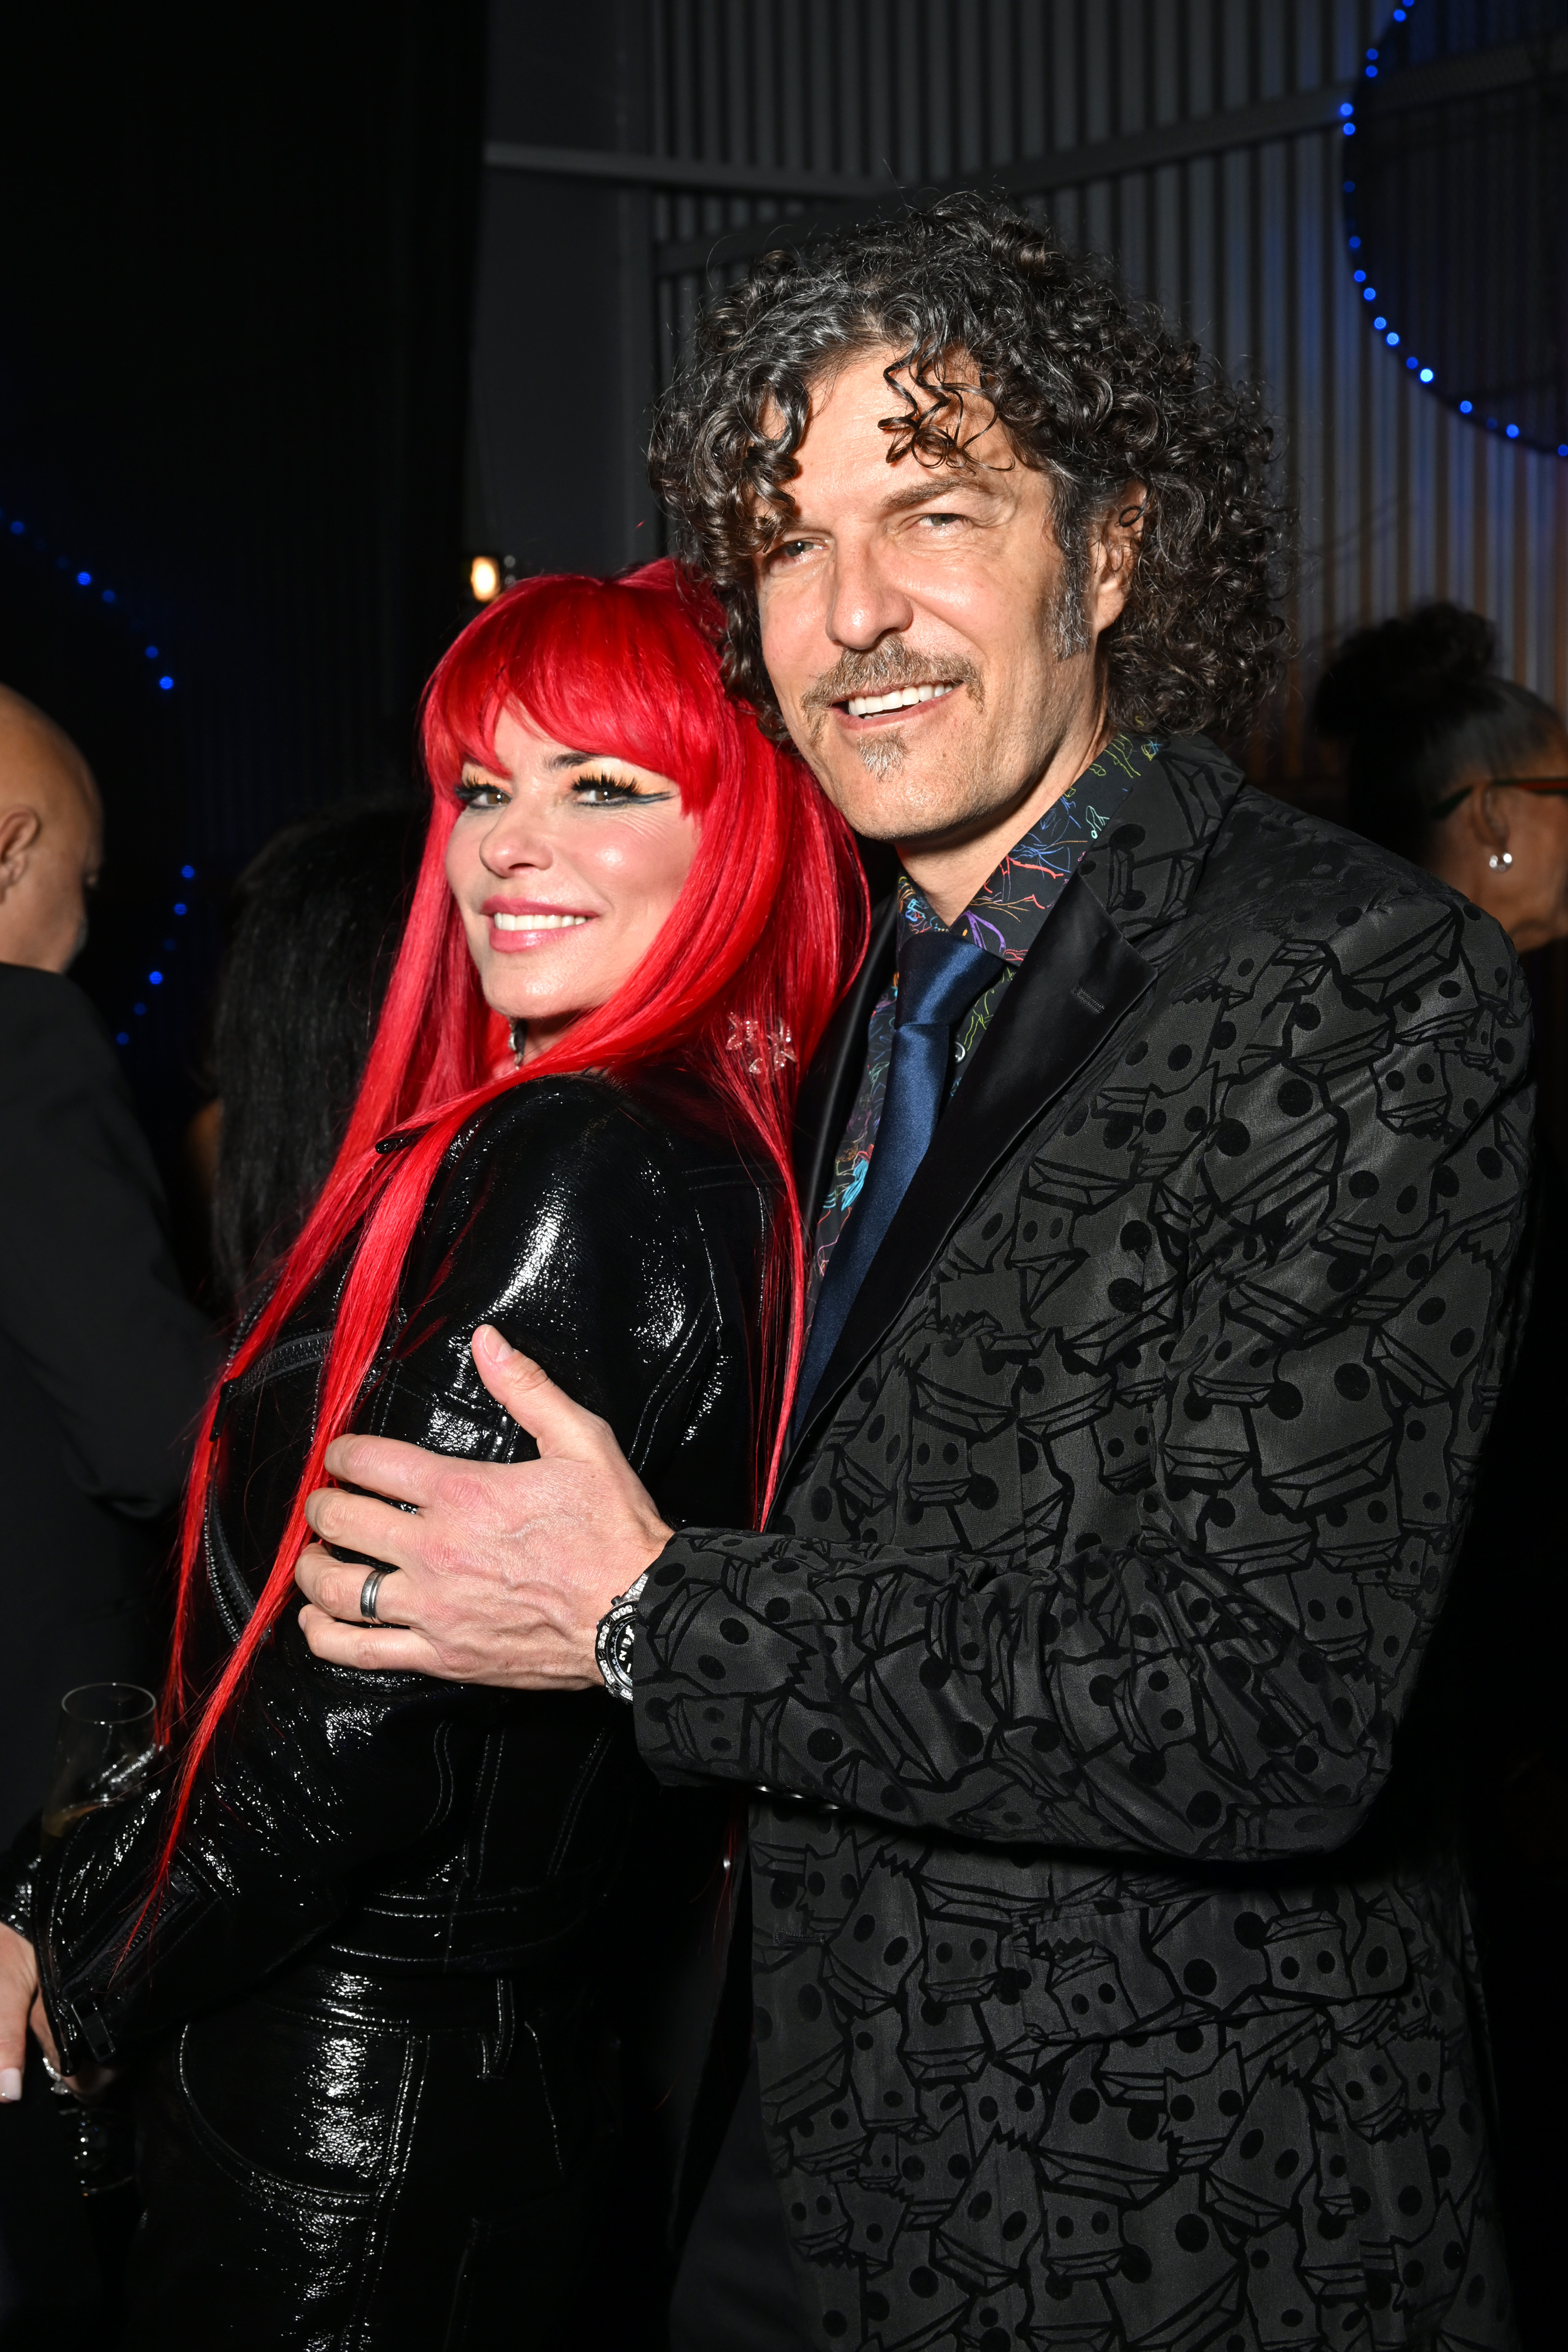 Shania Twain y Frédéric Thiébaud asisten a la fiesta posterior a 2023 de Universal Music Group en Milk Studios Los Angeles el 5 de febrero de 2023 en Los Angeles, California | Fuente: Getty Images